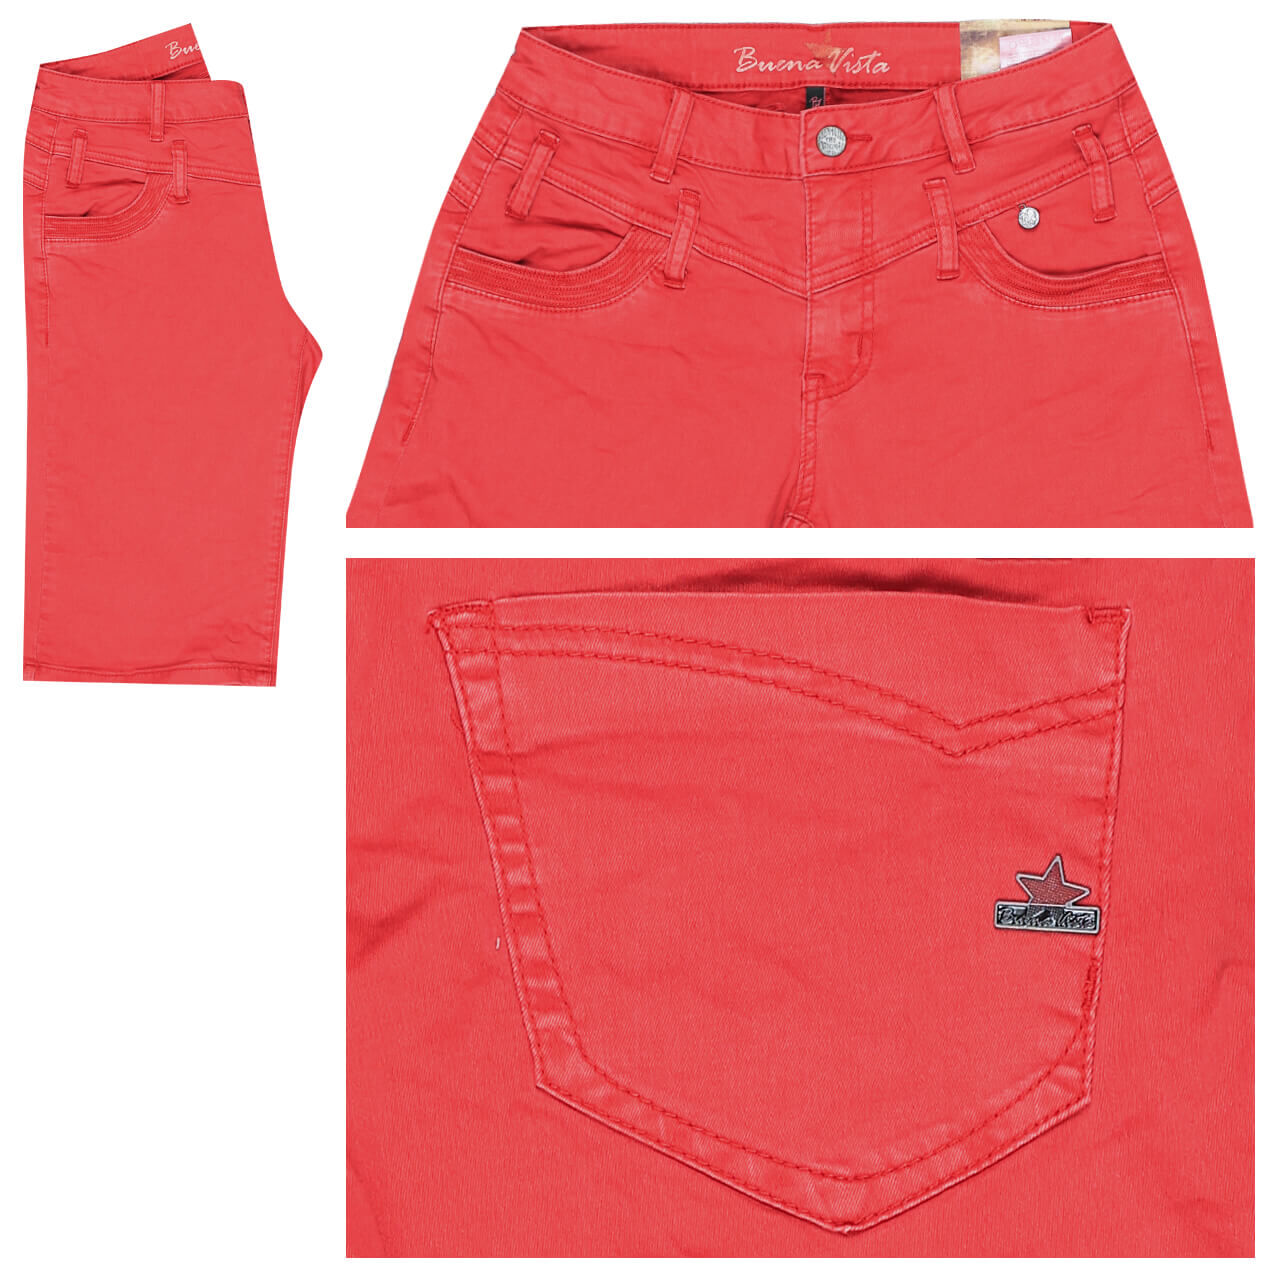 Buena Vista Florida-Short Stretch Twill Baumwollhose für Damen in Rot, FarbNr.: 2044